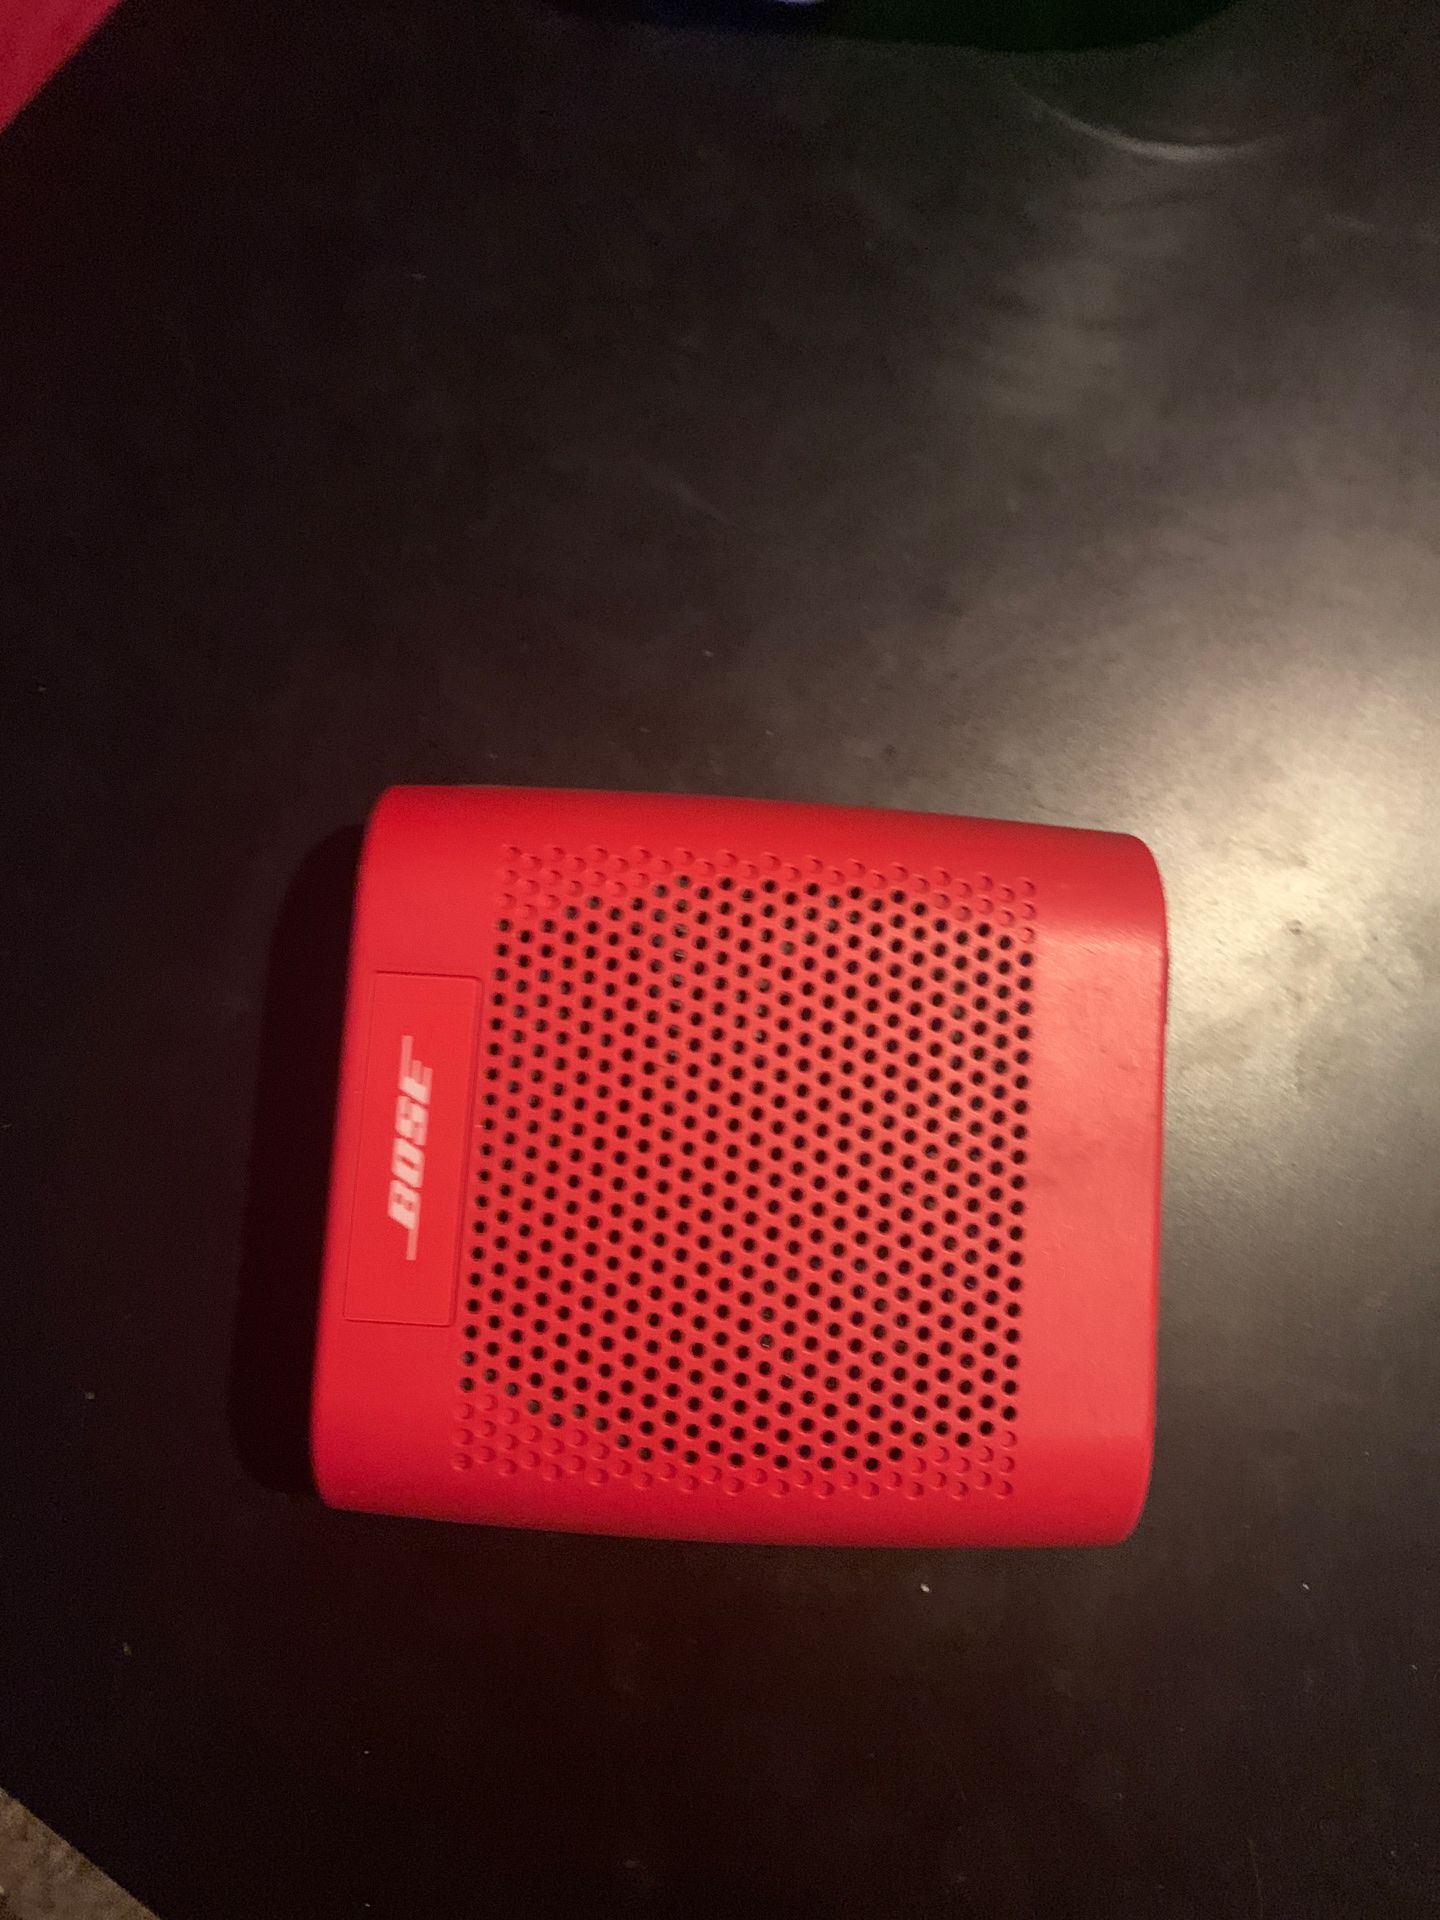 Bose soundlink Bluetooth speaker